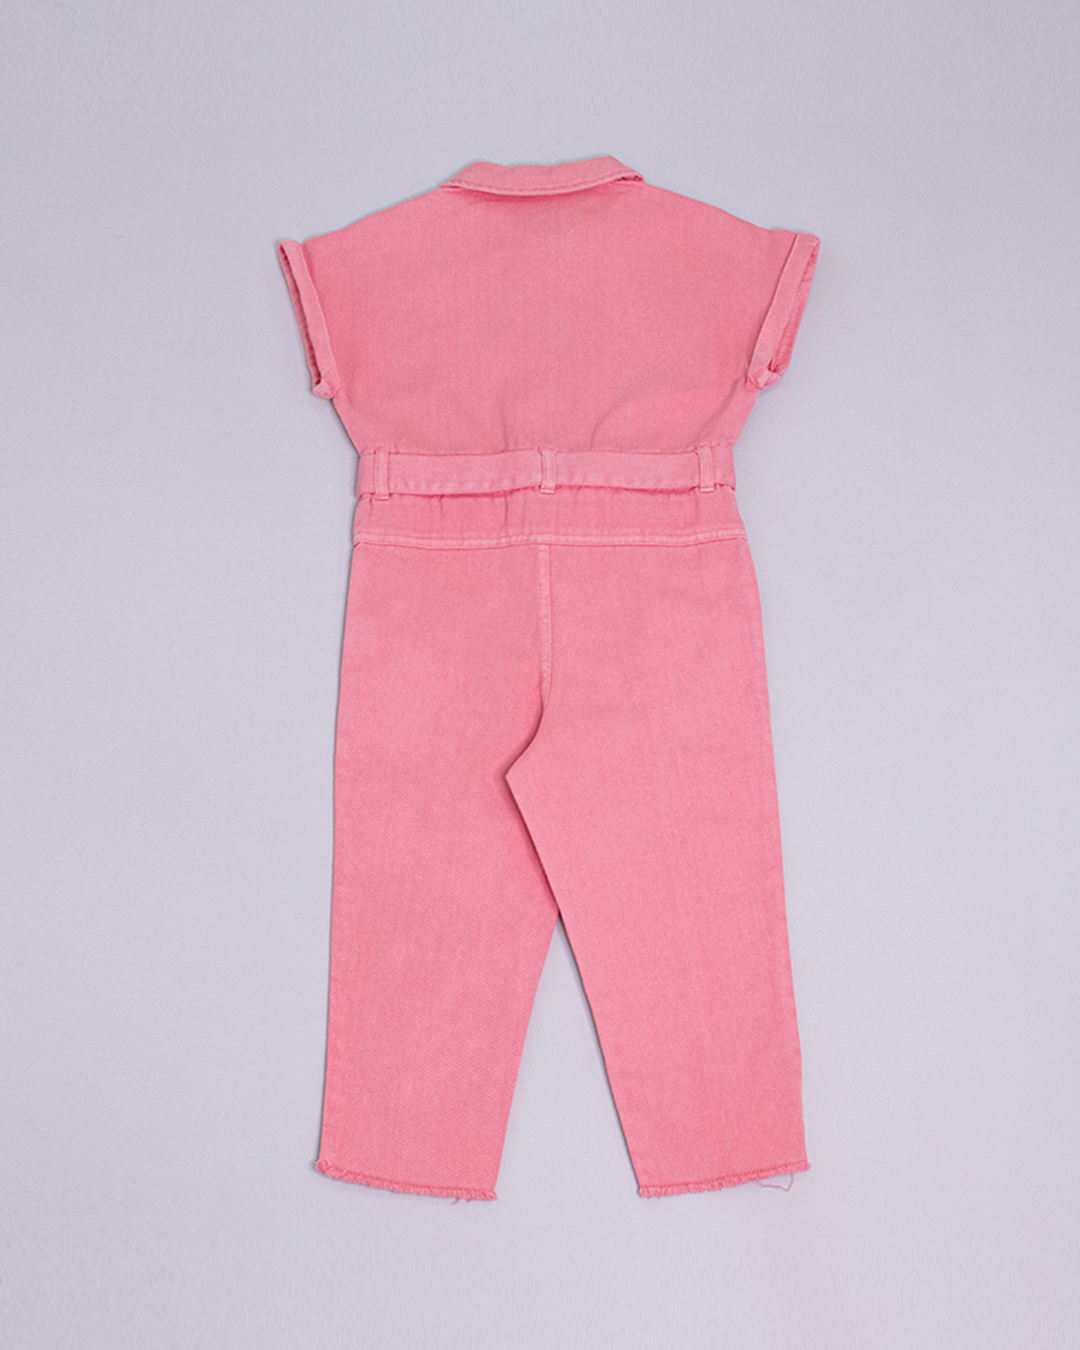 Braga larga de color rosado con un cinturón de la misma tela y un corazón bordado